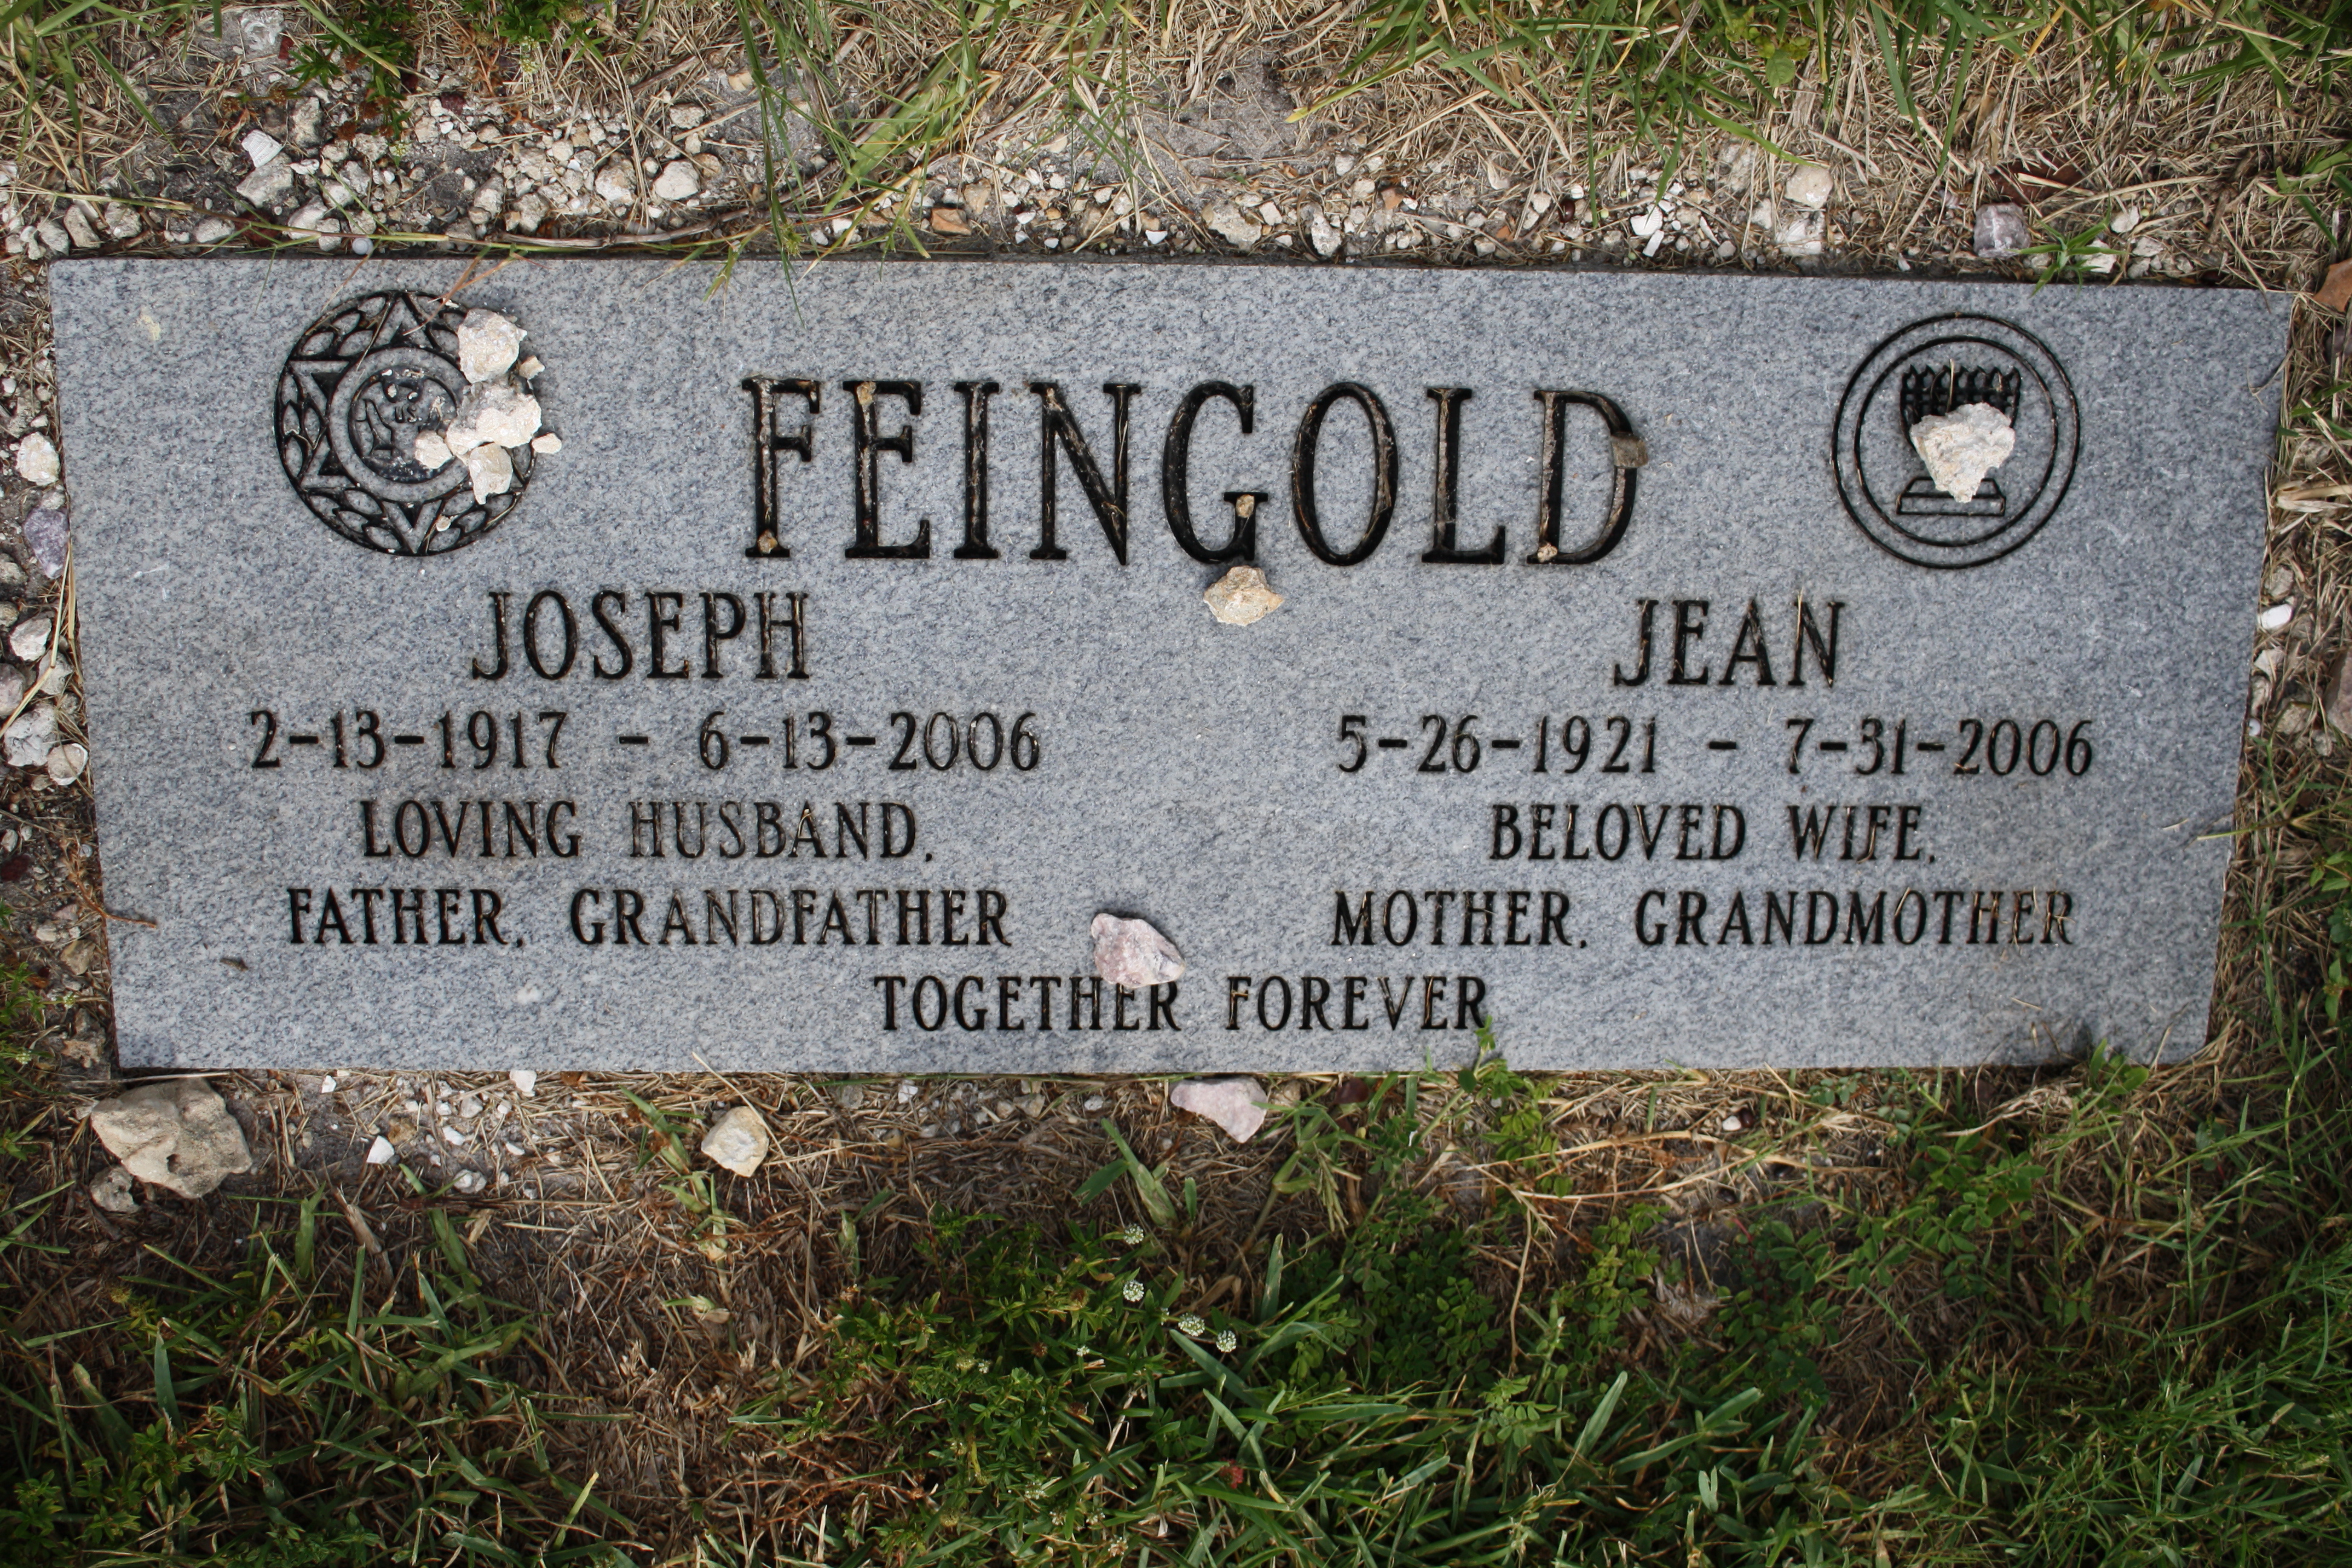 Jean Feingold